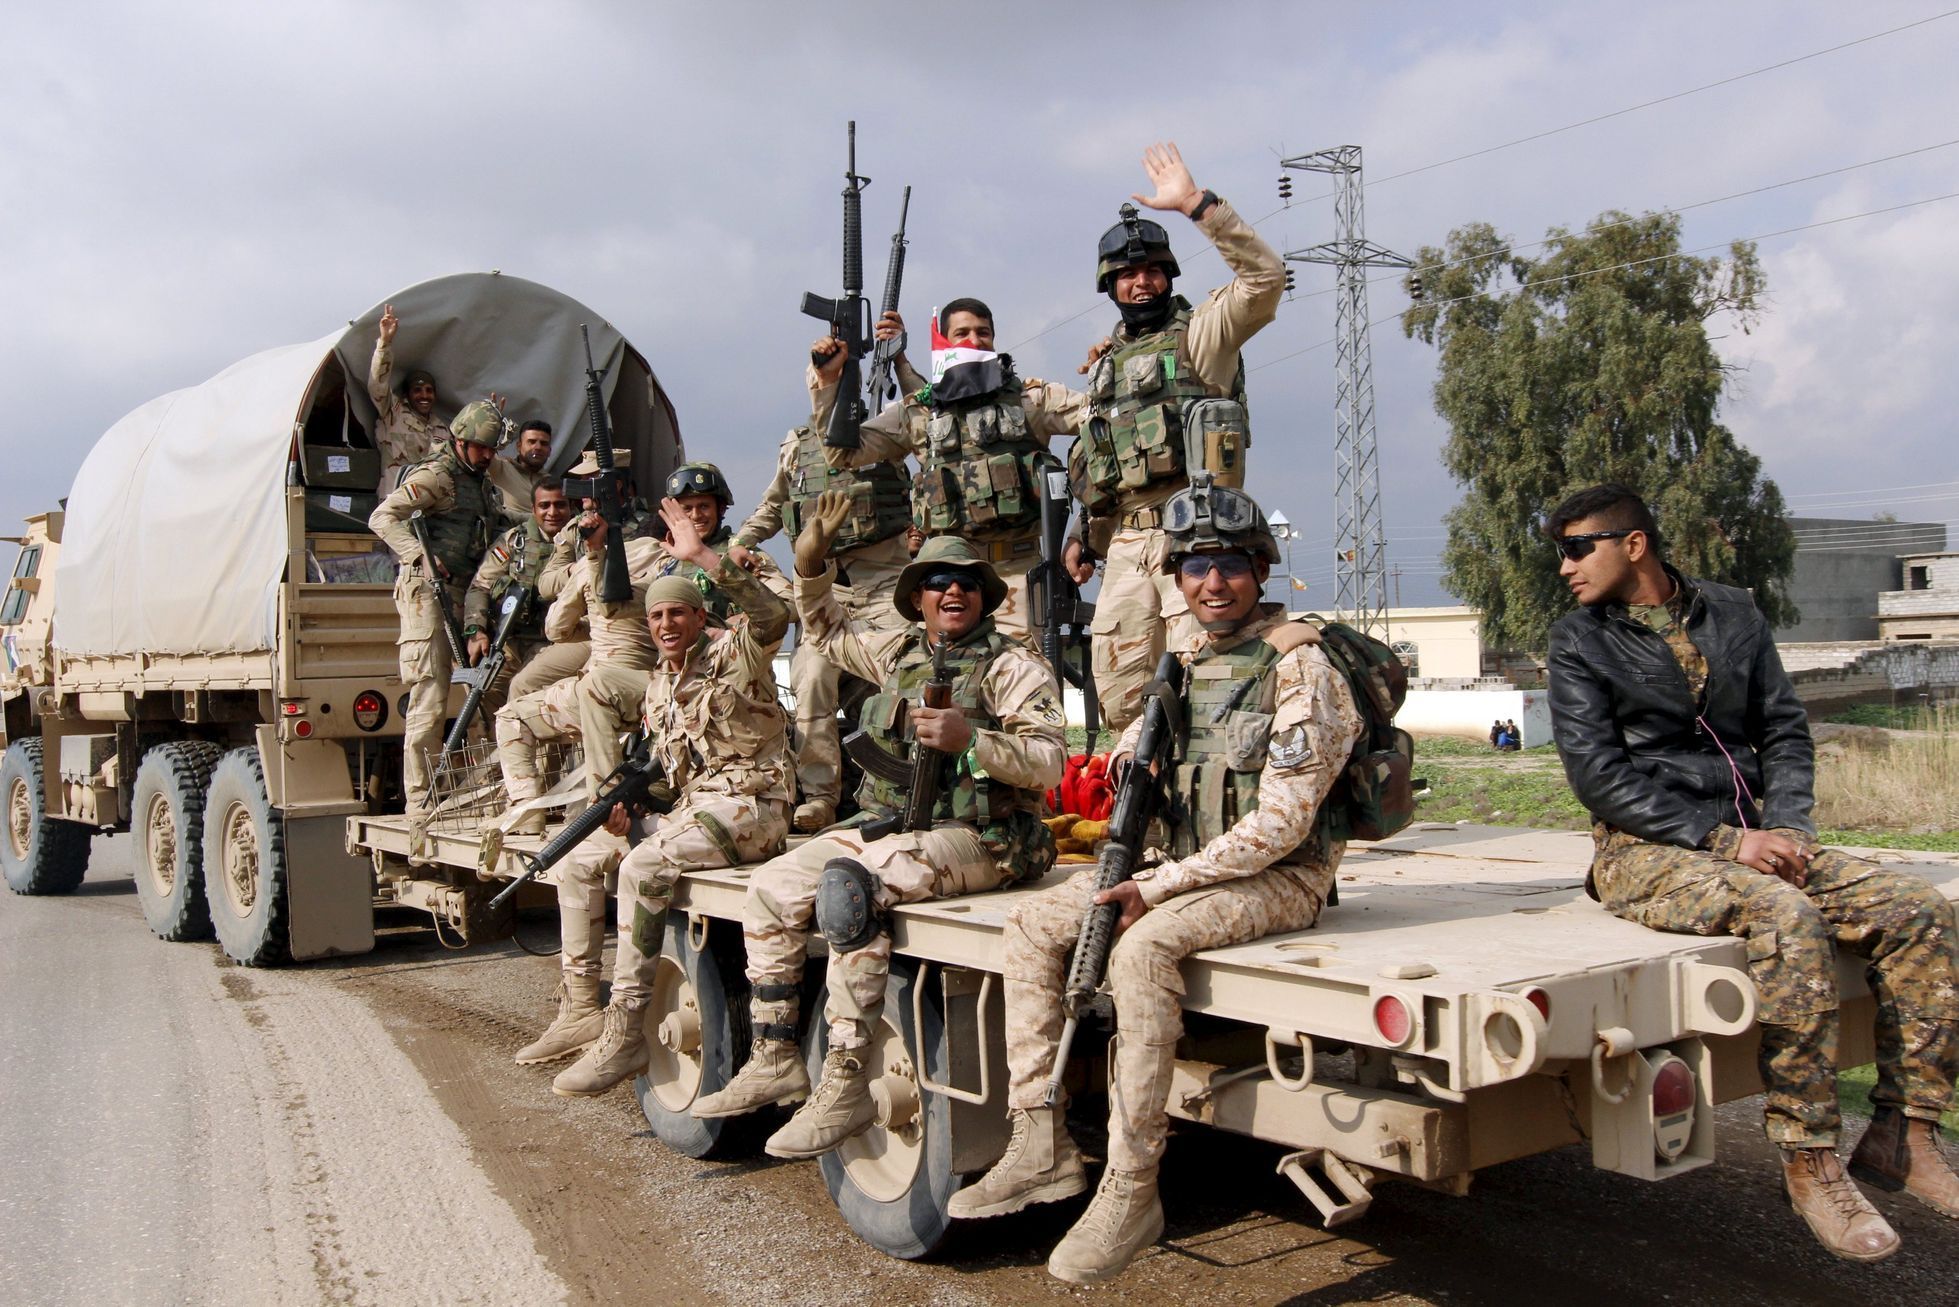 Irácké jednotky jedou do boje proti IS